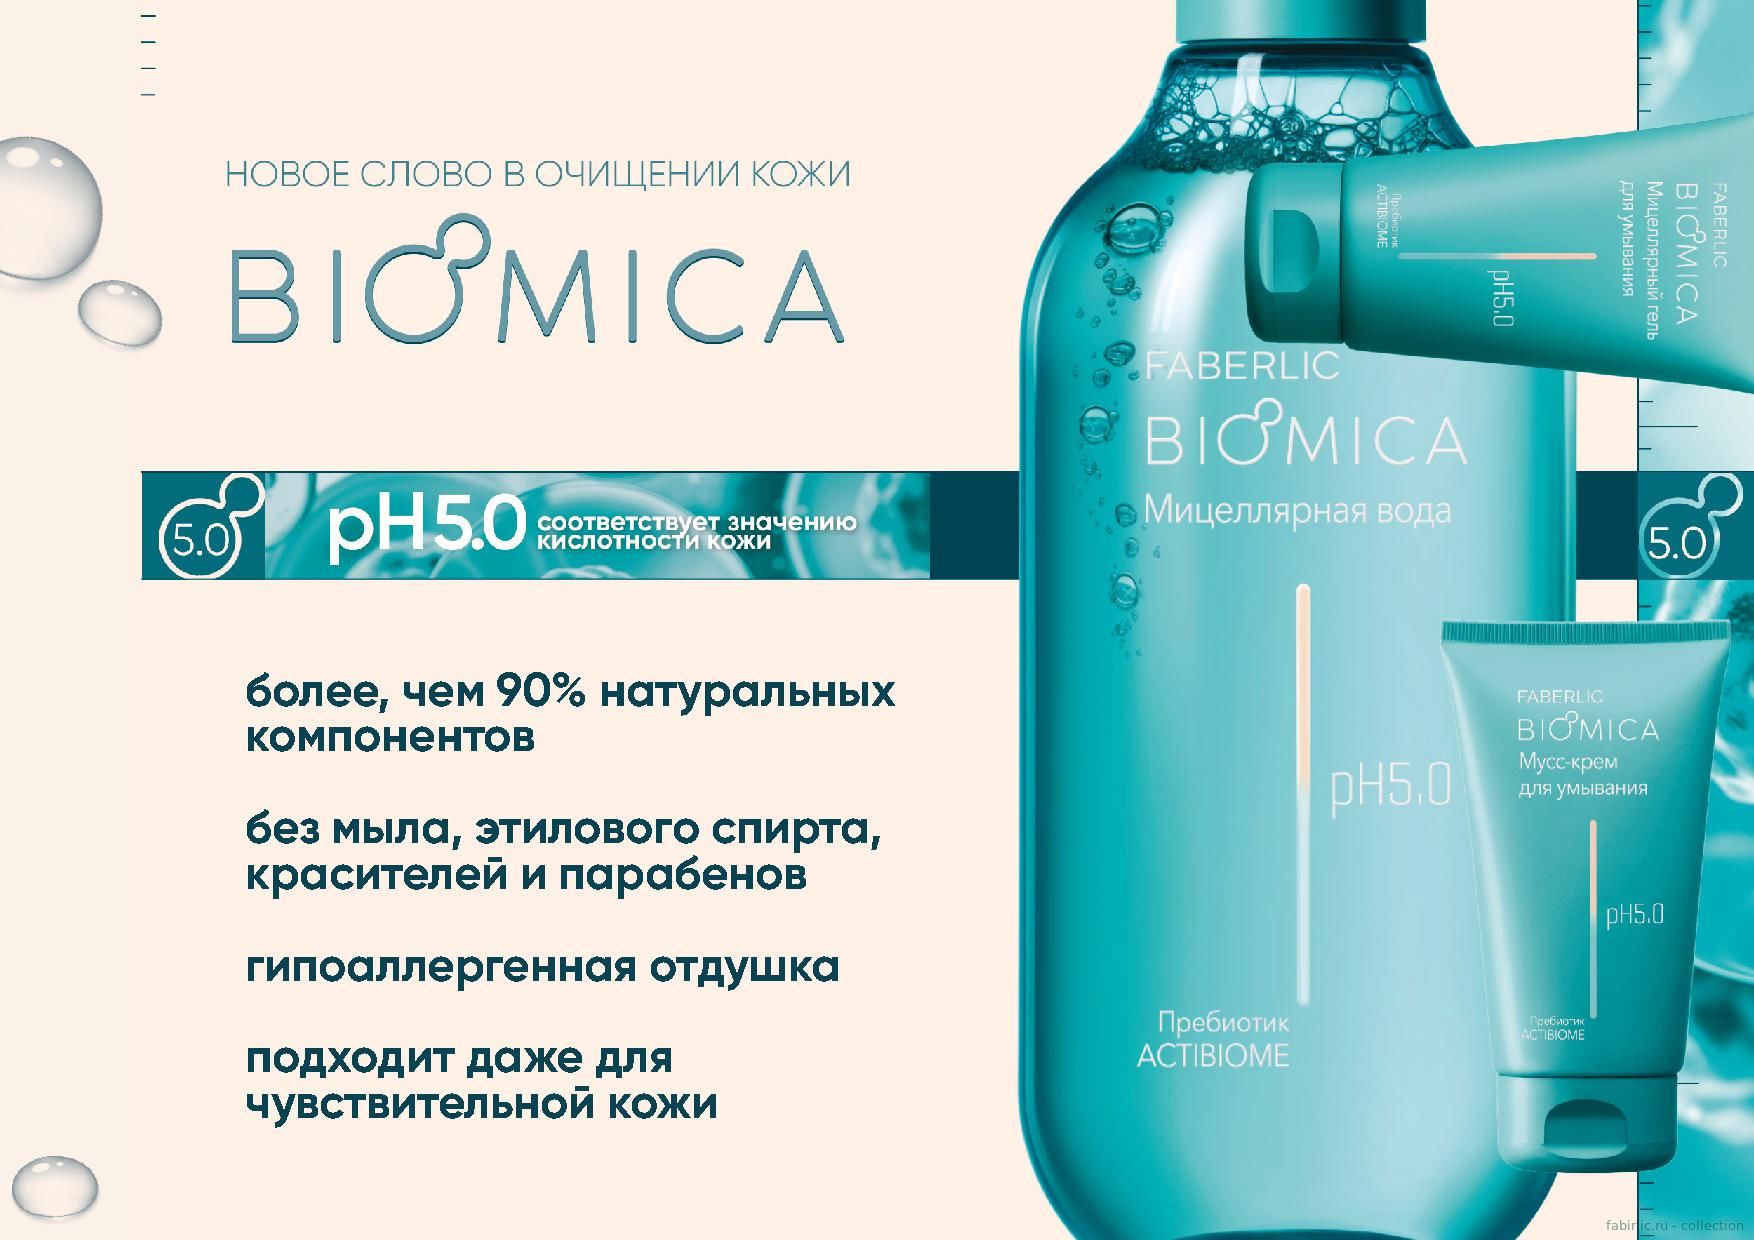 Средства серии BIOMICA - новый подход к очищению кожи!